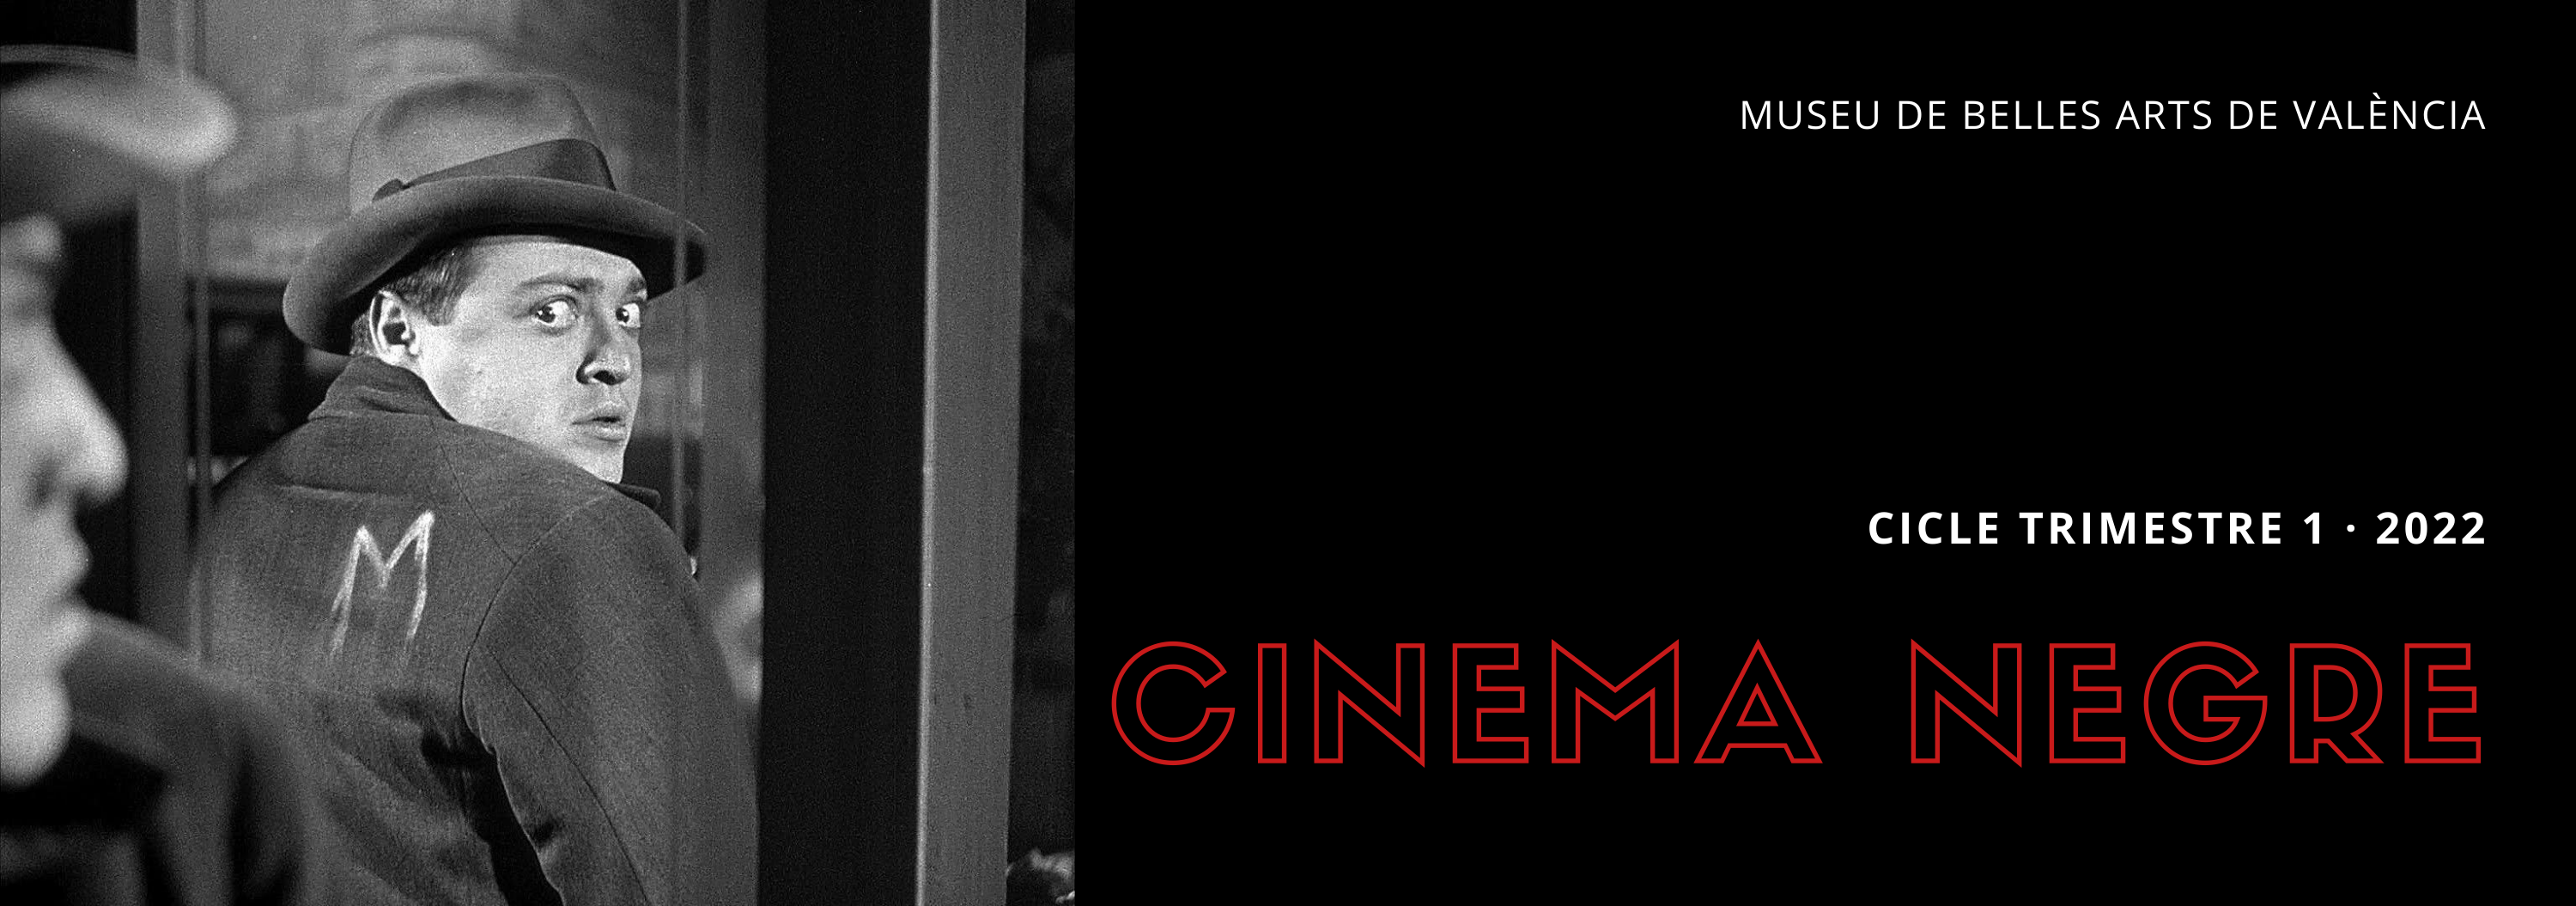 Cinema negre | Cicle de cinema